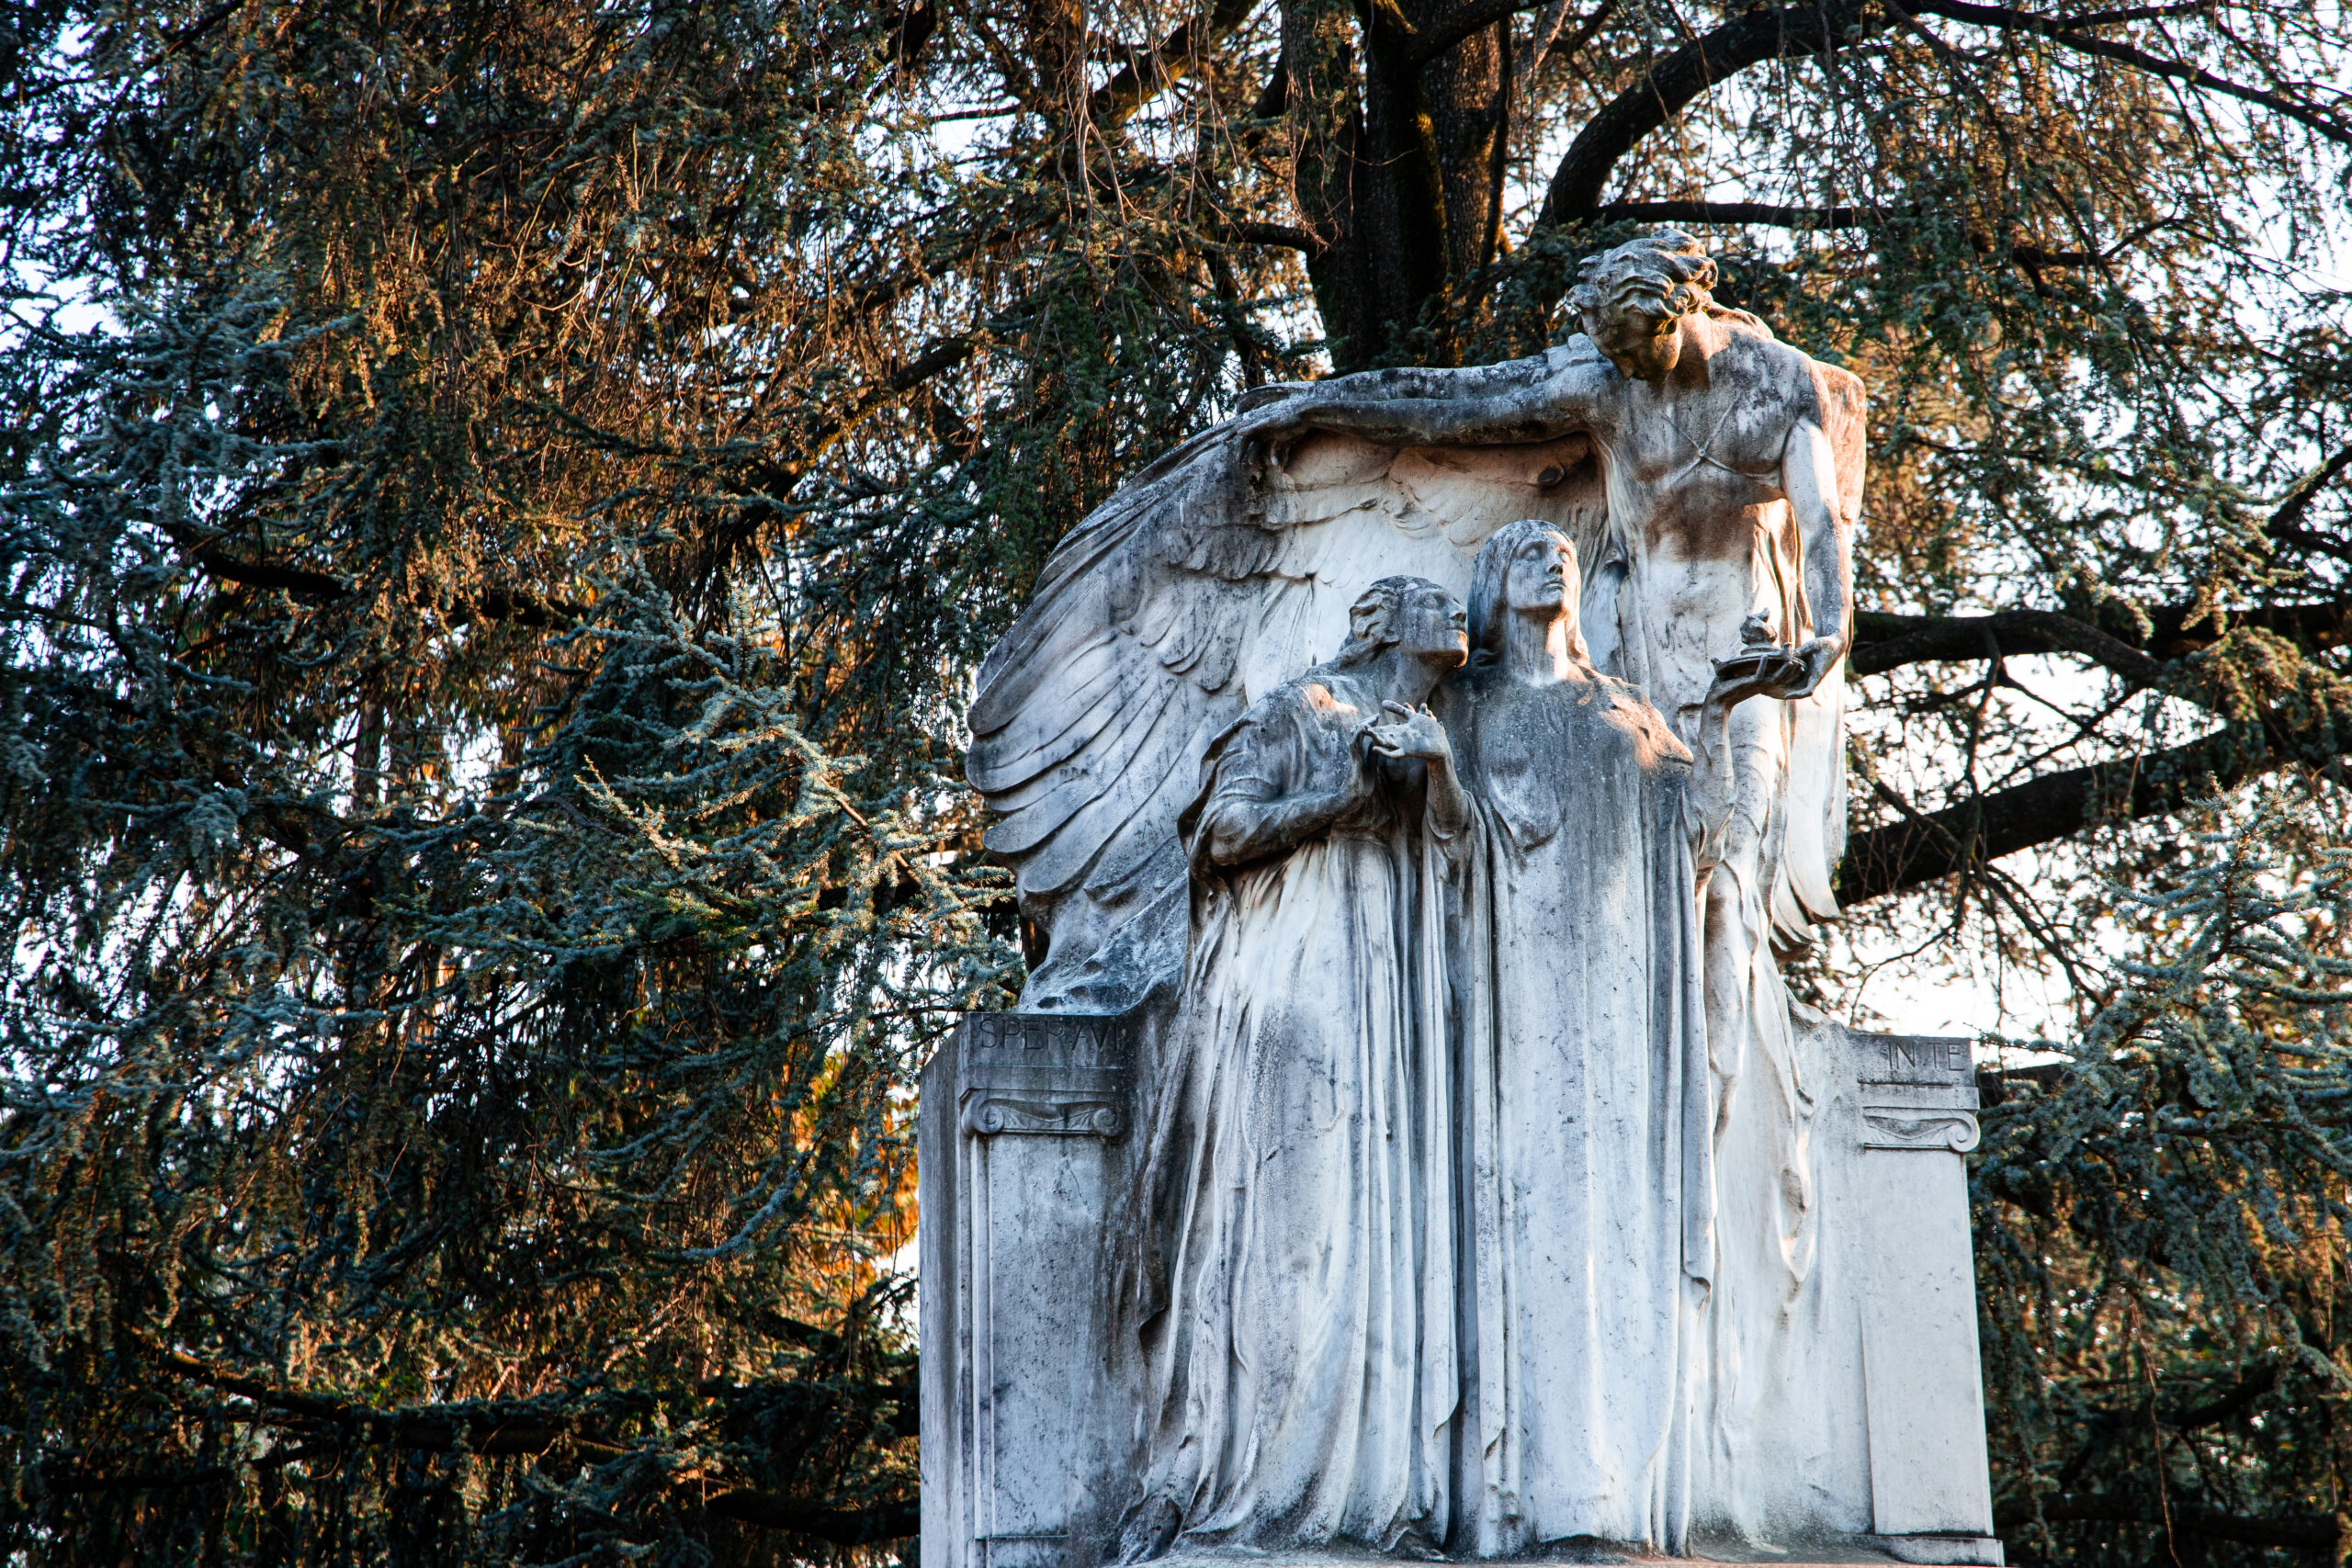 Cimitero Monumentale di Torino